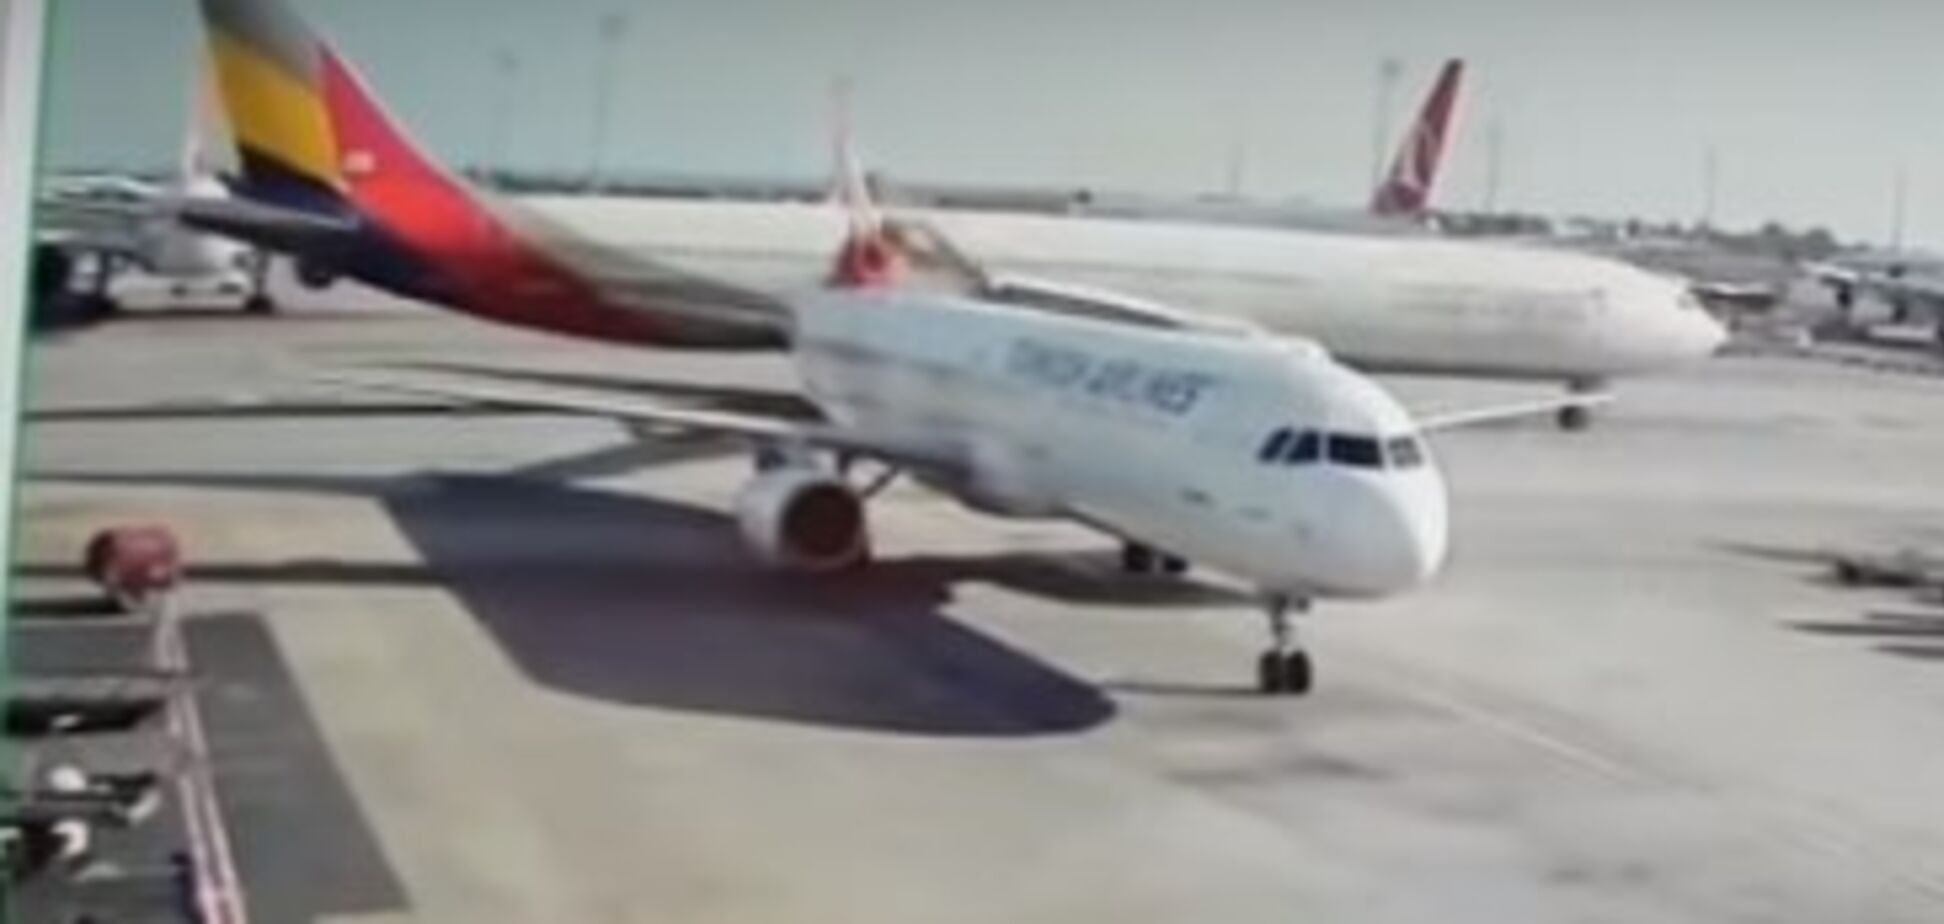 Зрізав крилом: зіткнення літаків в Стамбулі потрапило на відео